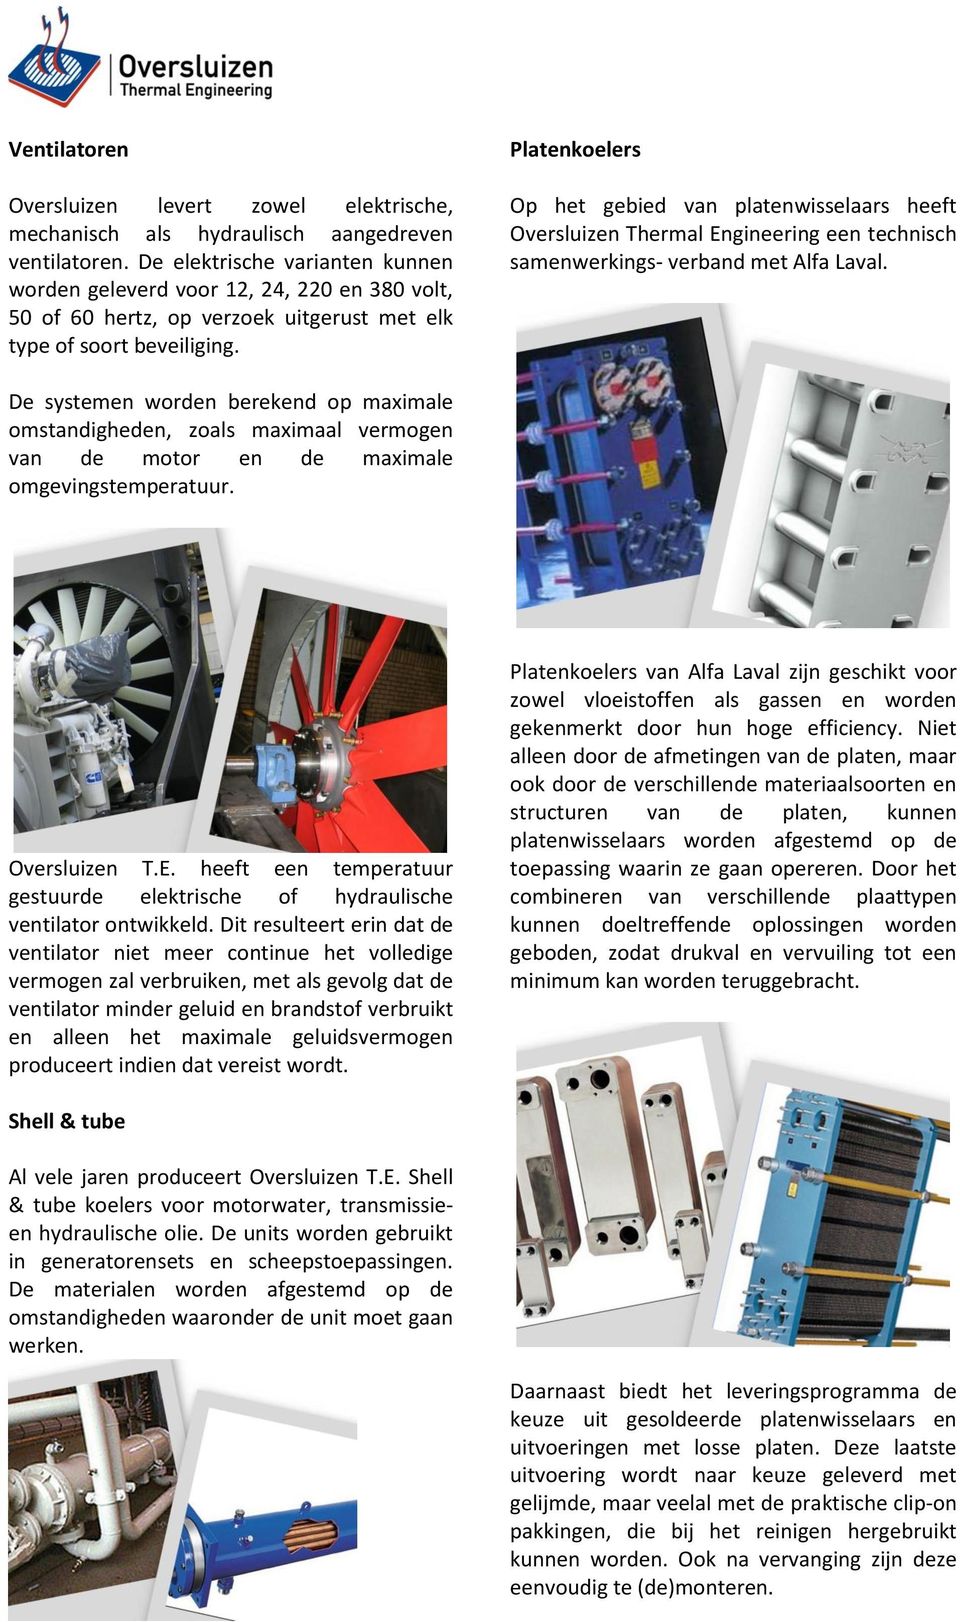 Platenkoelers Op het gebied van platenwisselaars heeft Oversluizen Thermal Engineering een technisch samenwerkings- verband met Alfa Laval.